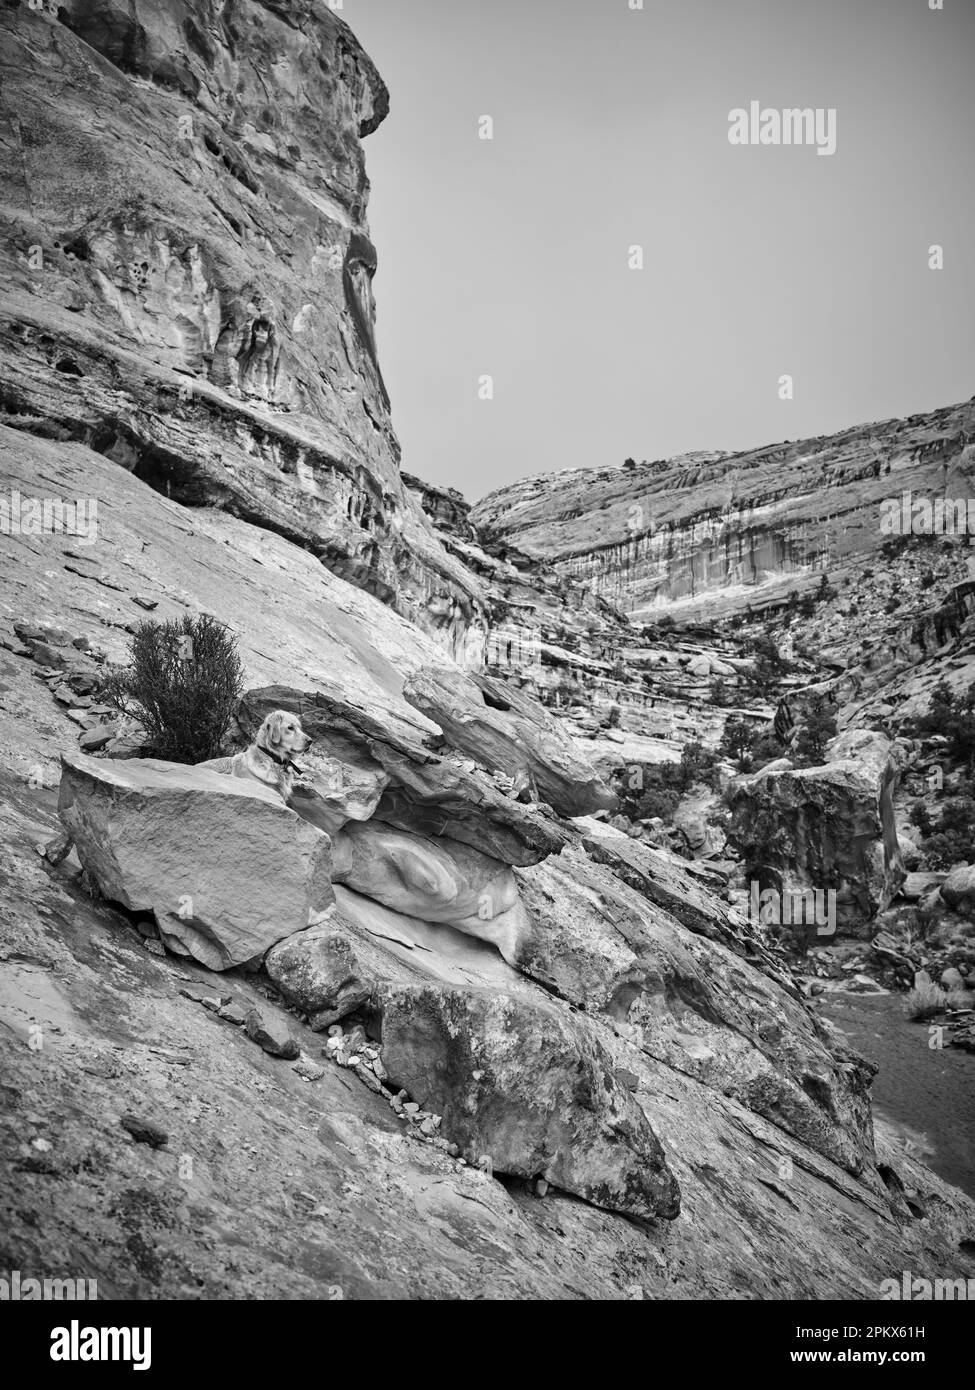 Un Golden retriever sale rocce in un canyon dello Utah Foto Stock